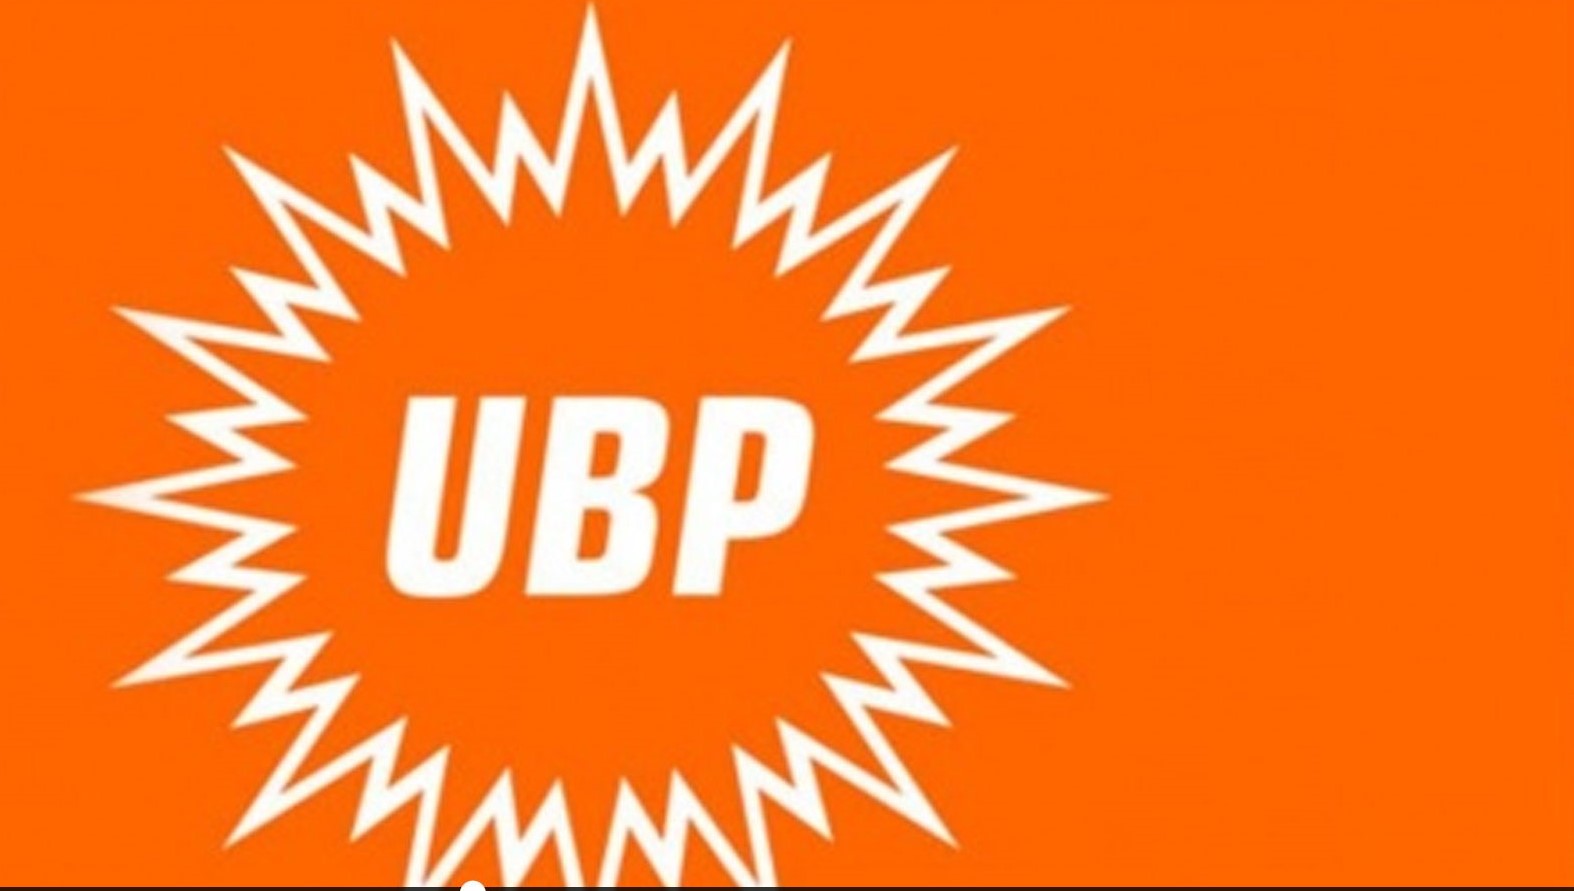 UBP Merkez Yönetim Kurulu toplandı..Lefkoşa İlçe Başkanlığı’na Ahmet Savaşan  görevlendirildi